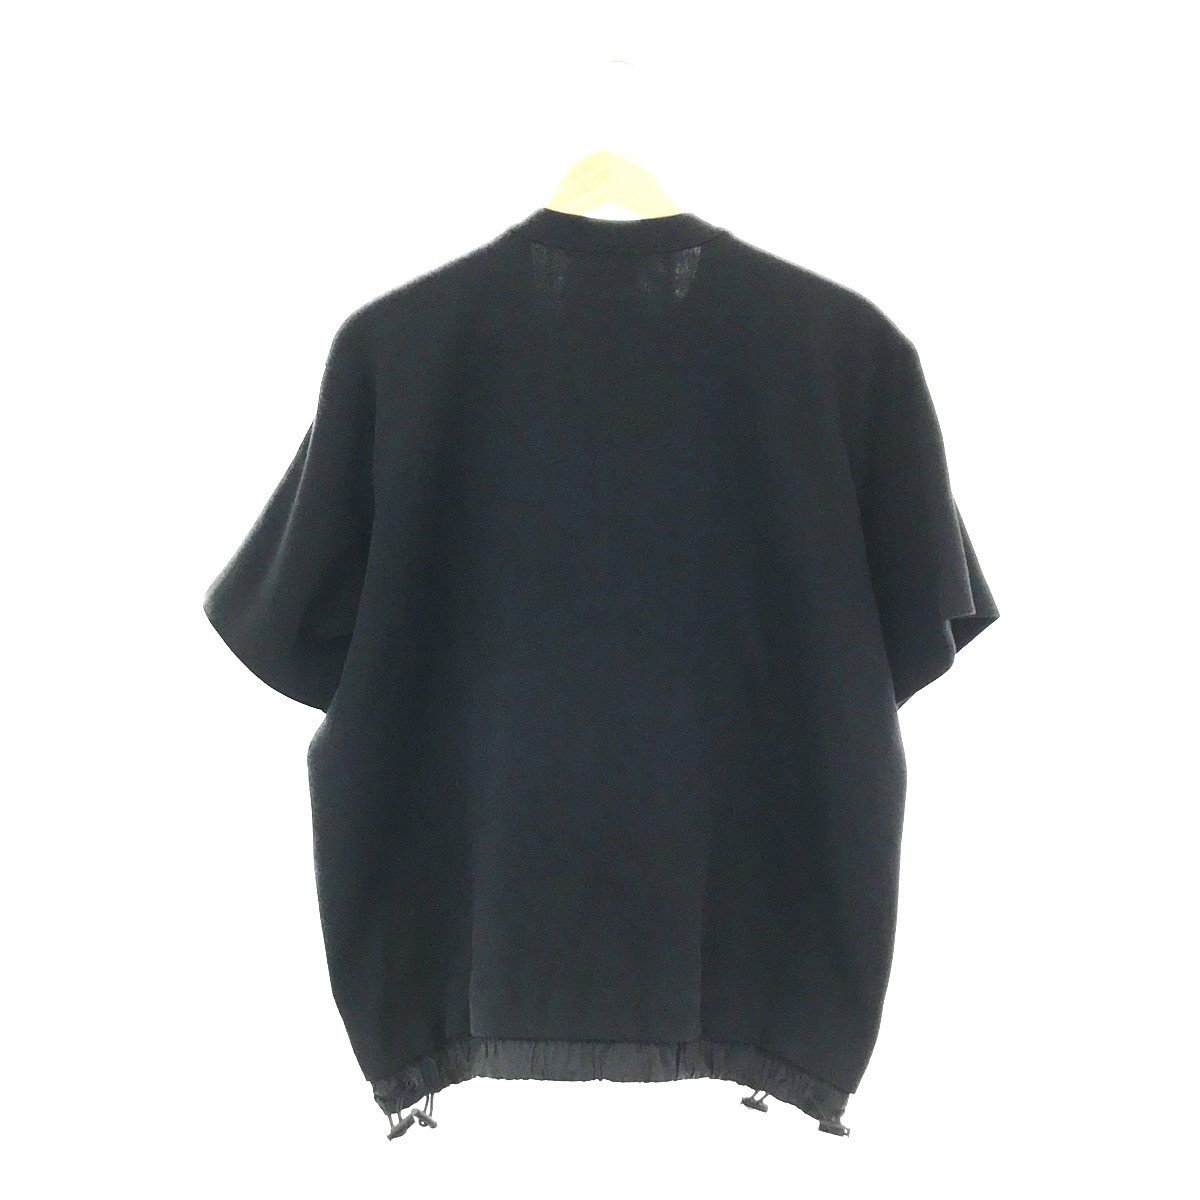 タグ付 NIKE ナイキ SACAI サカイ DQ9056-010 コラボモデル S/S TOP T-SHIRT Tシャツ トップス M ブラック_画像2